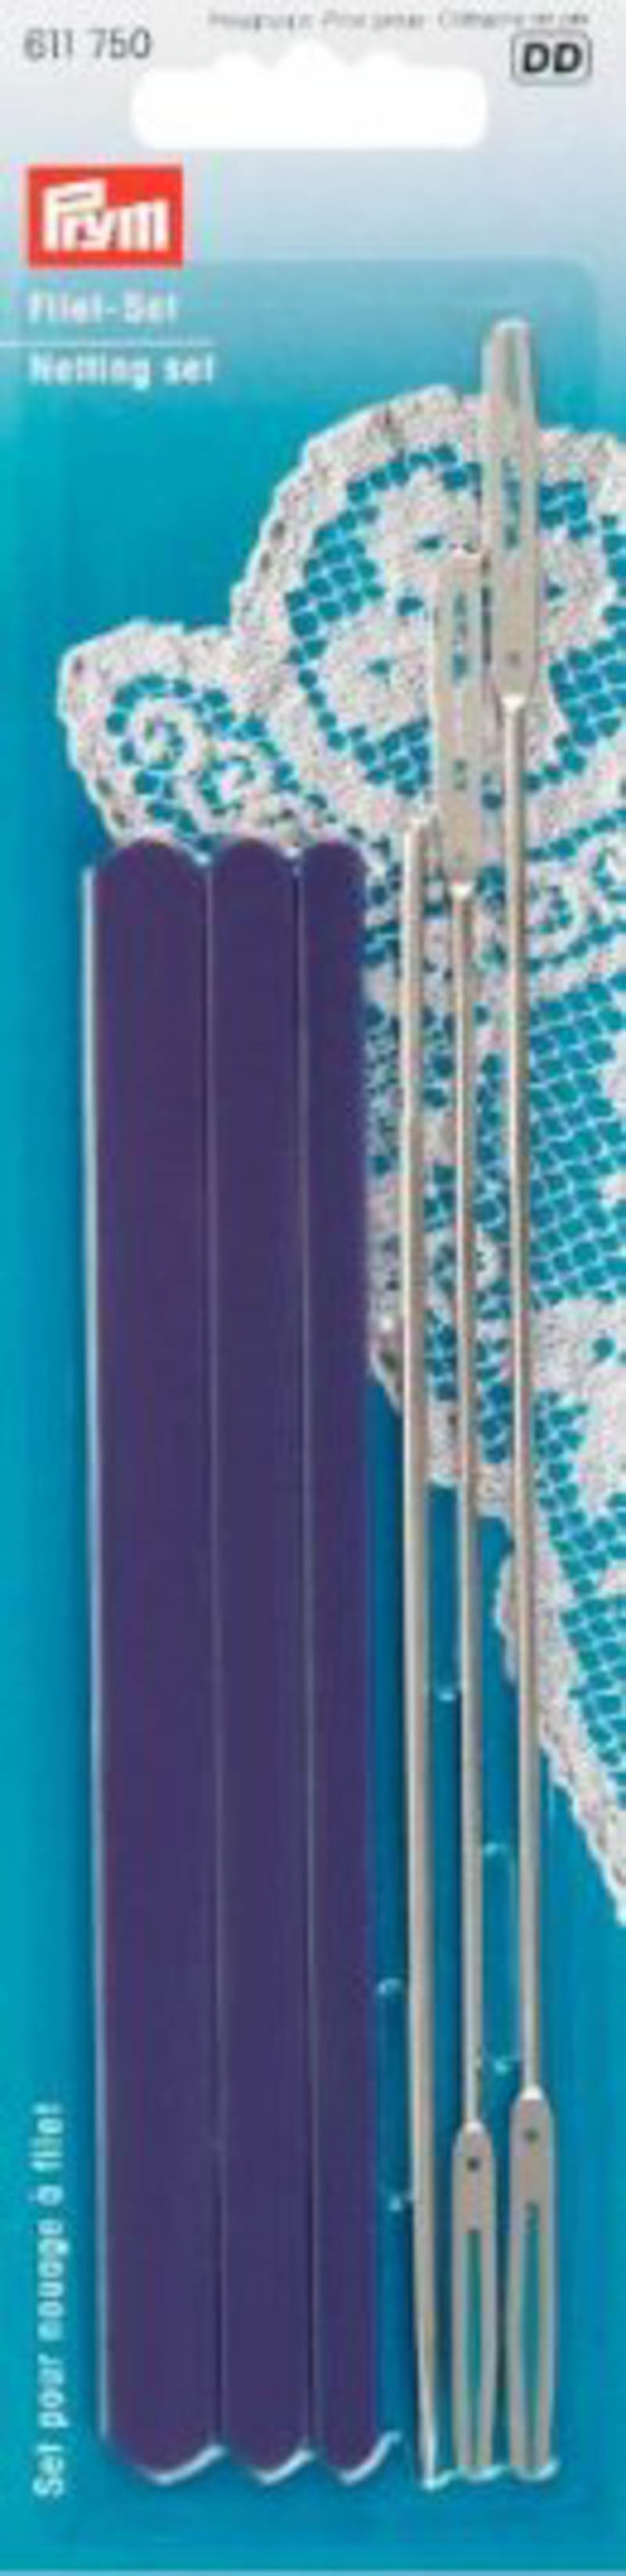 Набор для плетения филейного кружева пластик/металл фиолетовый, серебристый цв.